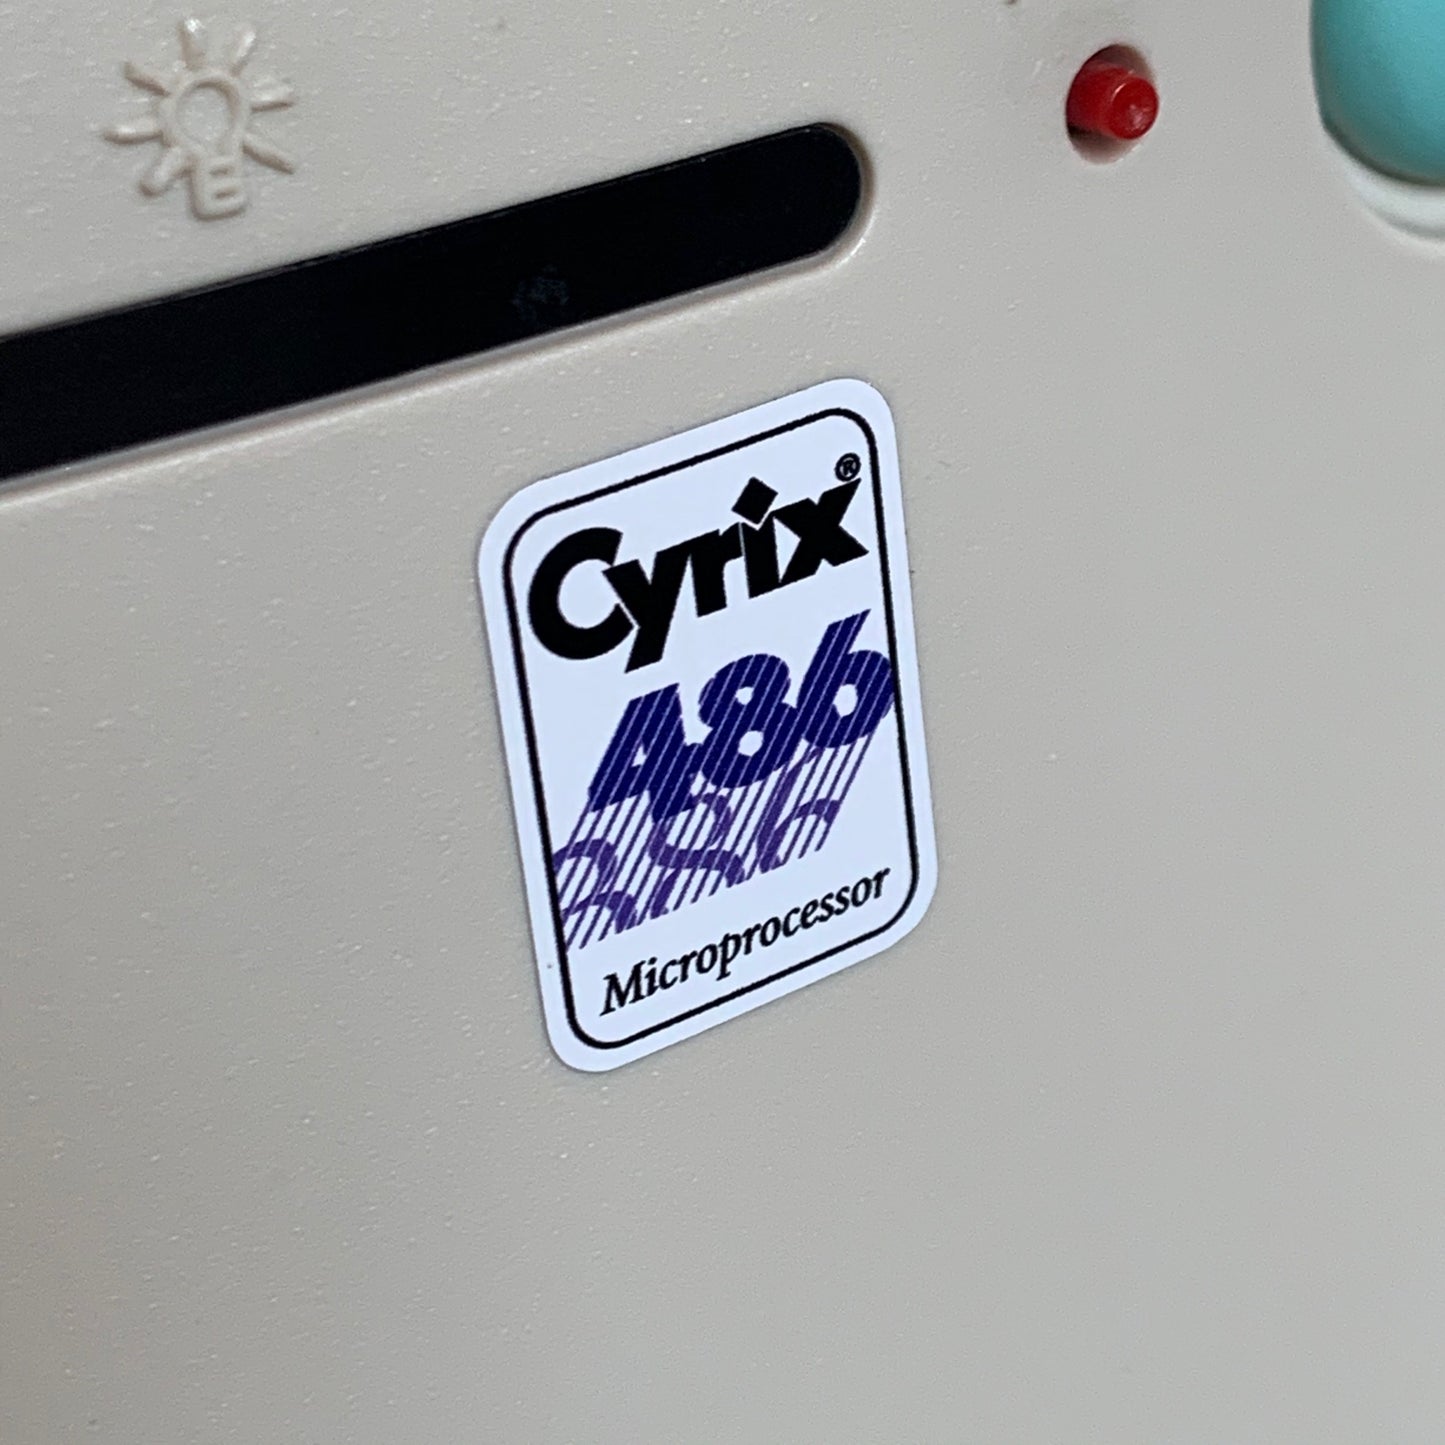 Cyrix 486 Processor Case Badge Sticker - White